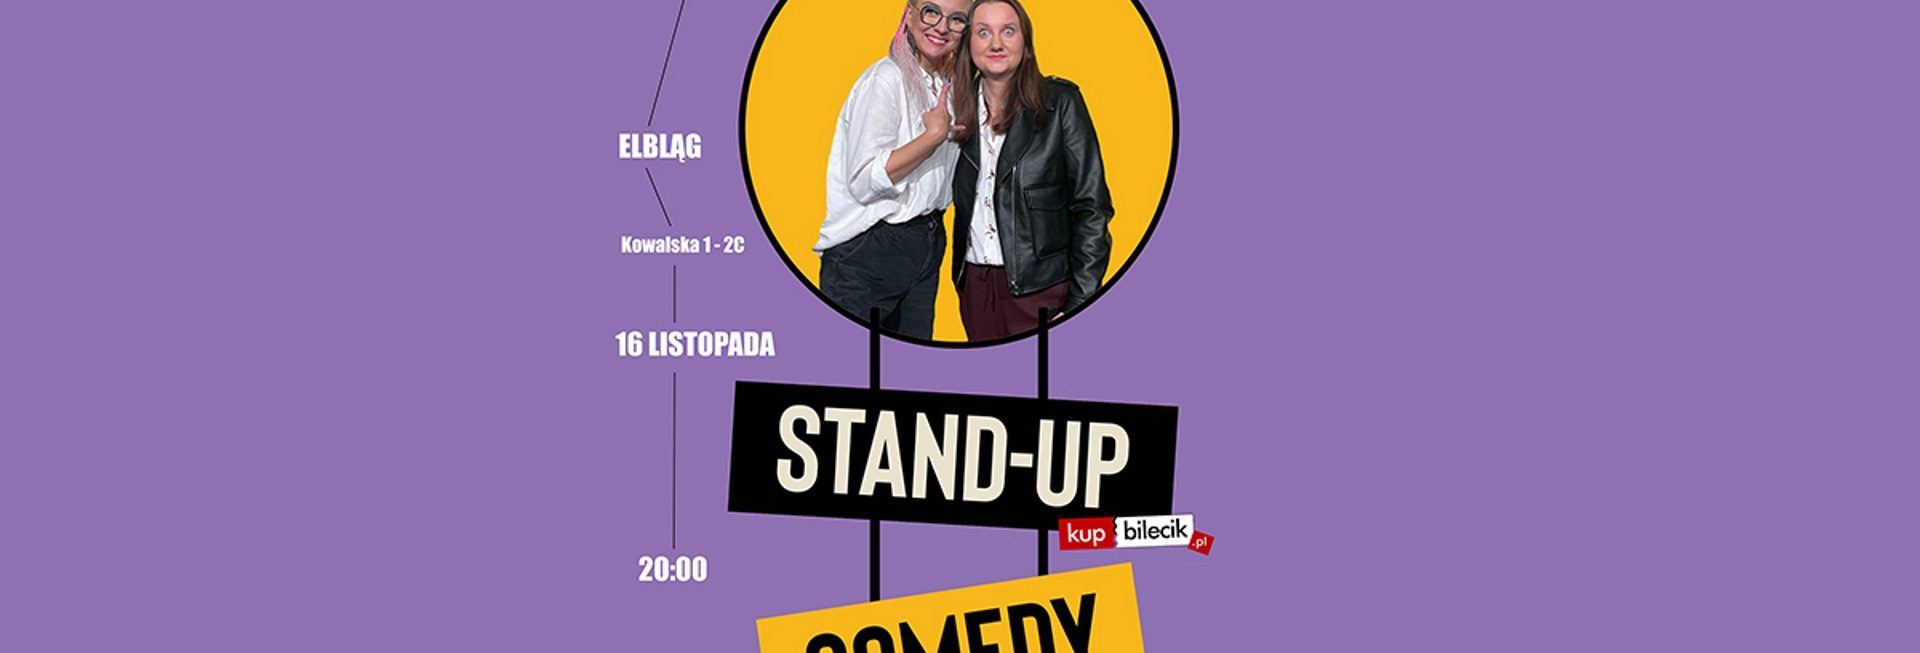 Plakat graficzny zapraszający do Klubu Mjazzga w Elblągu na występ Stand-up: Aleksandra Radomska & Paulina Potocka - ELBLĄG 2021.